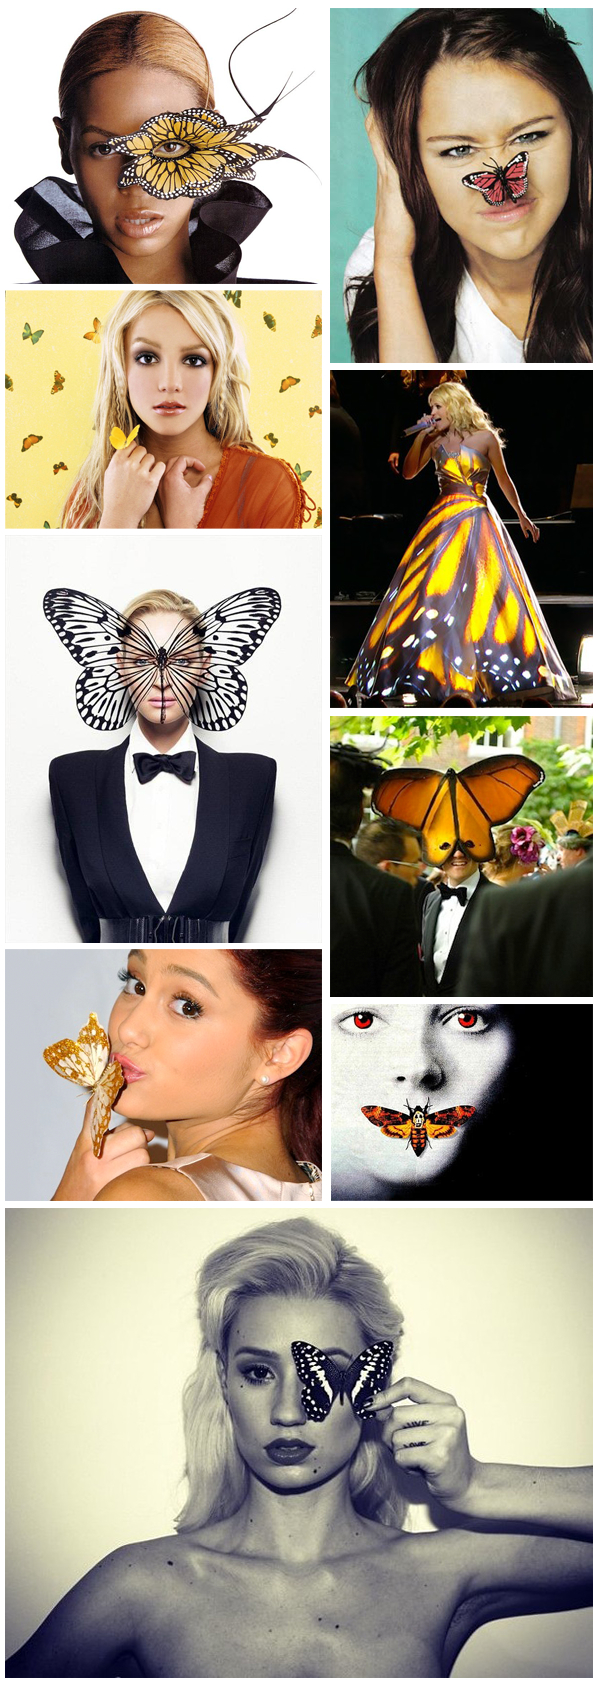 illuminati-monarch-butterfly-symbolism